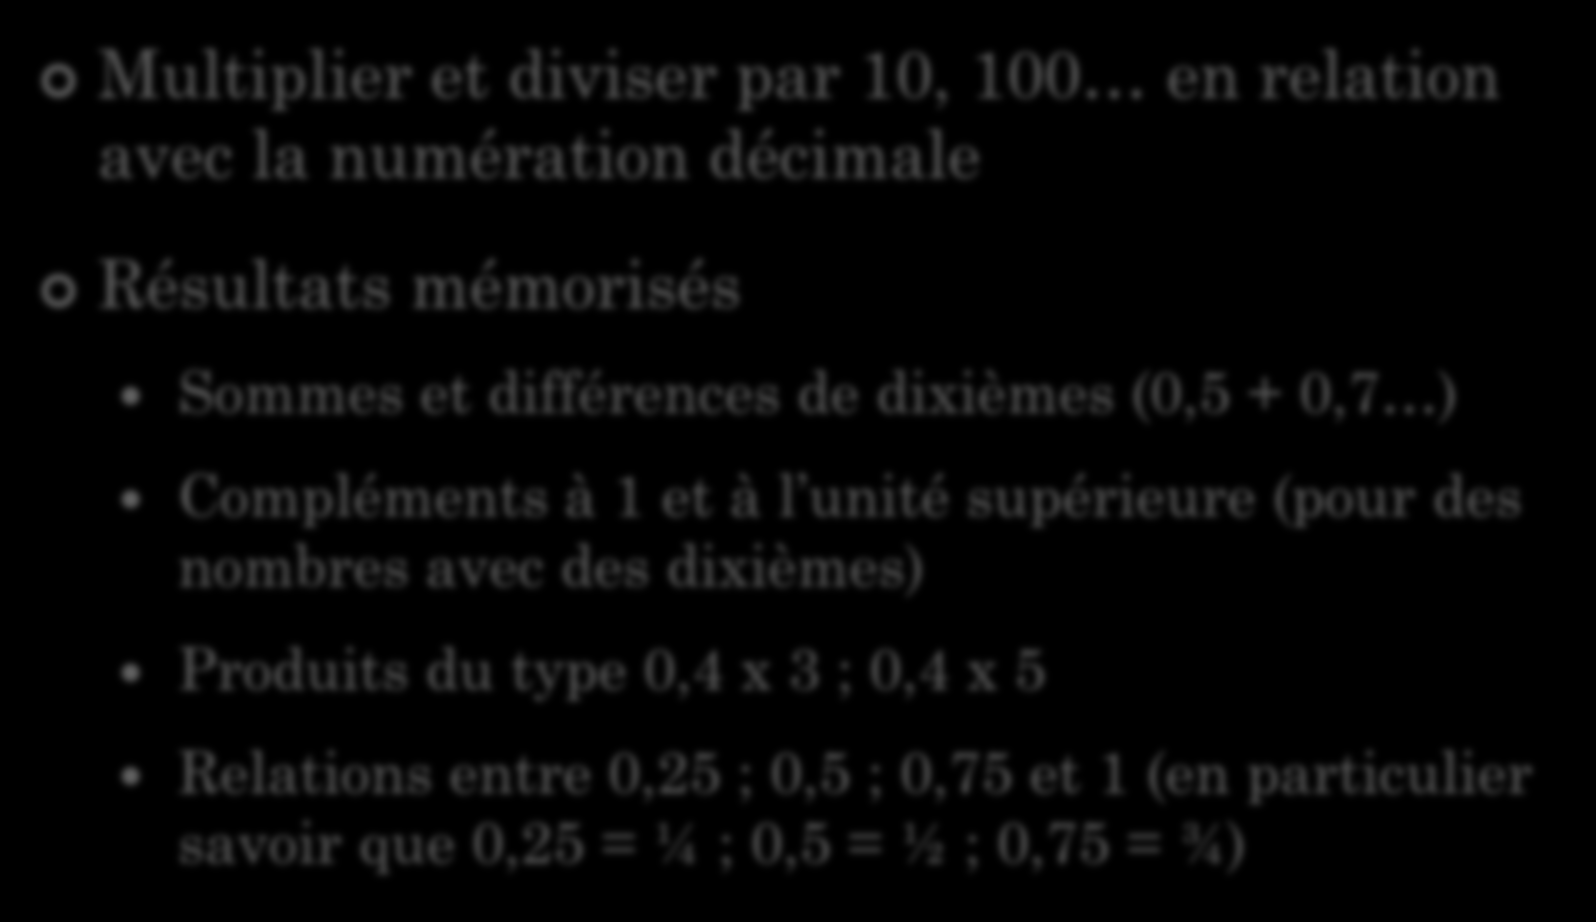 NOMBRES DÉCIMAUX ET CALCUL Points clés en calcul automatisé Multiplier et diviser par 10, 100 en relation avec la numération décimale Résultats mémorisés Sommes et différences de dixièmes (0,5 + 0,7